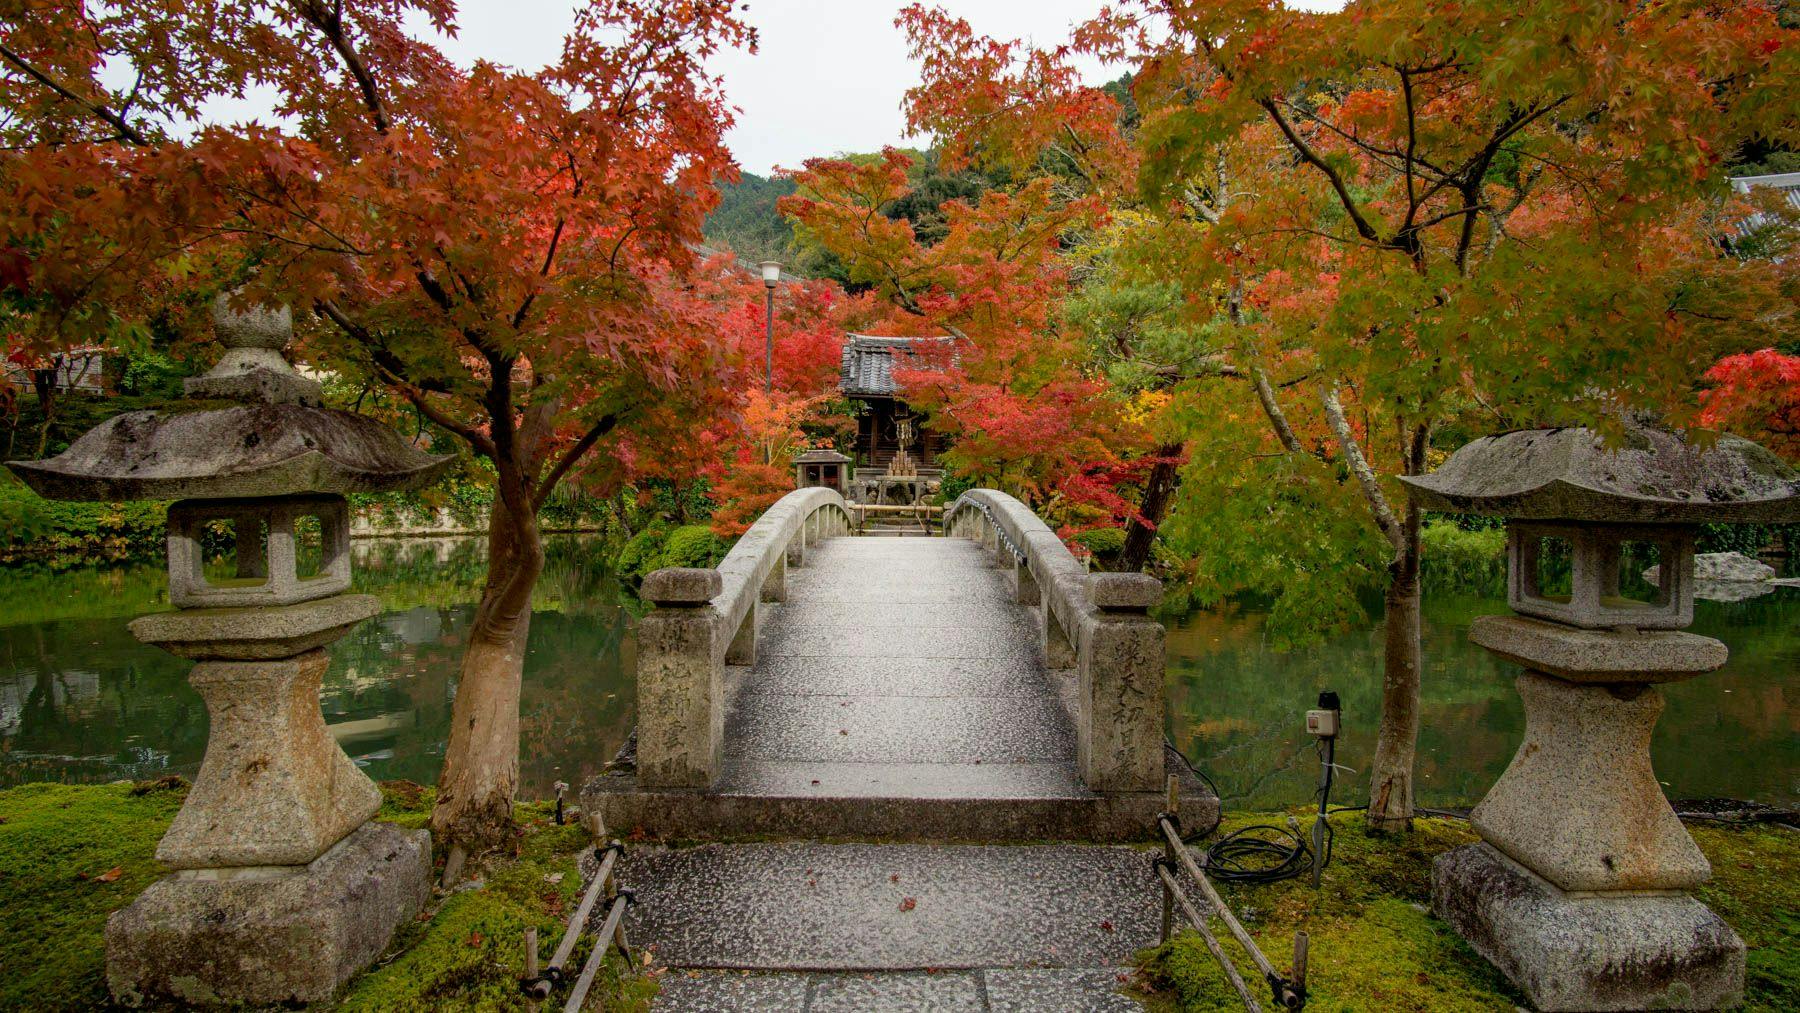 Kyoto: Eikando Temple, Kiyomizu-dera